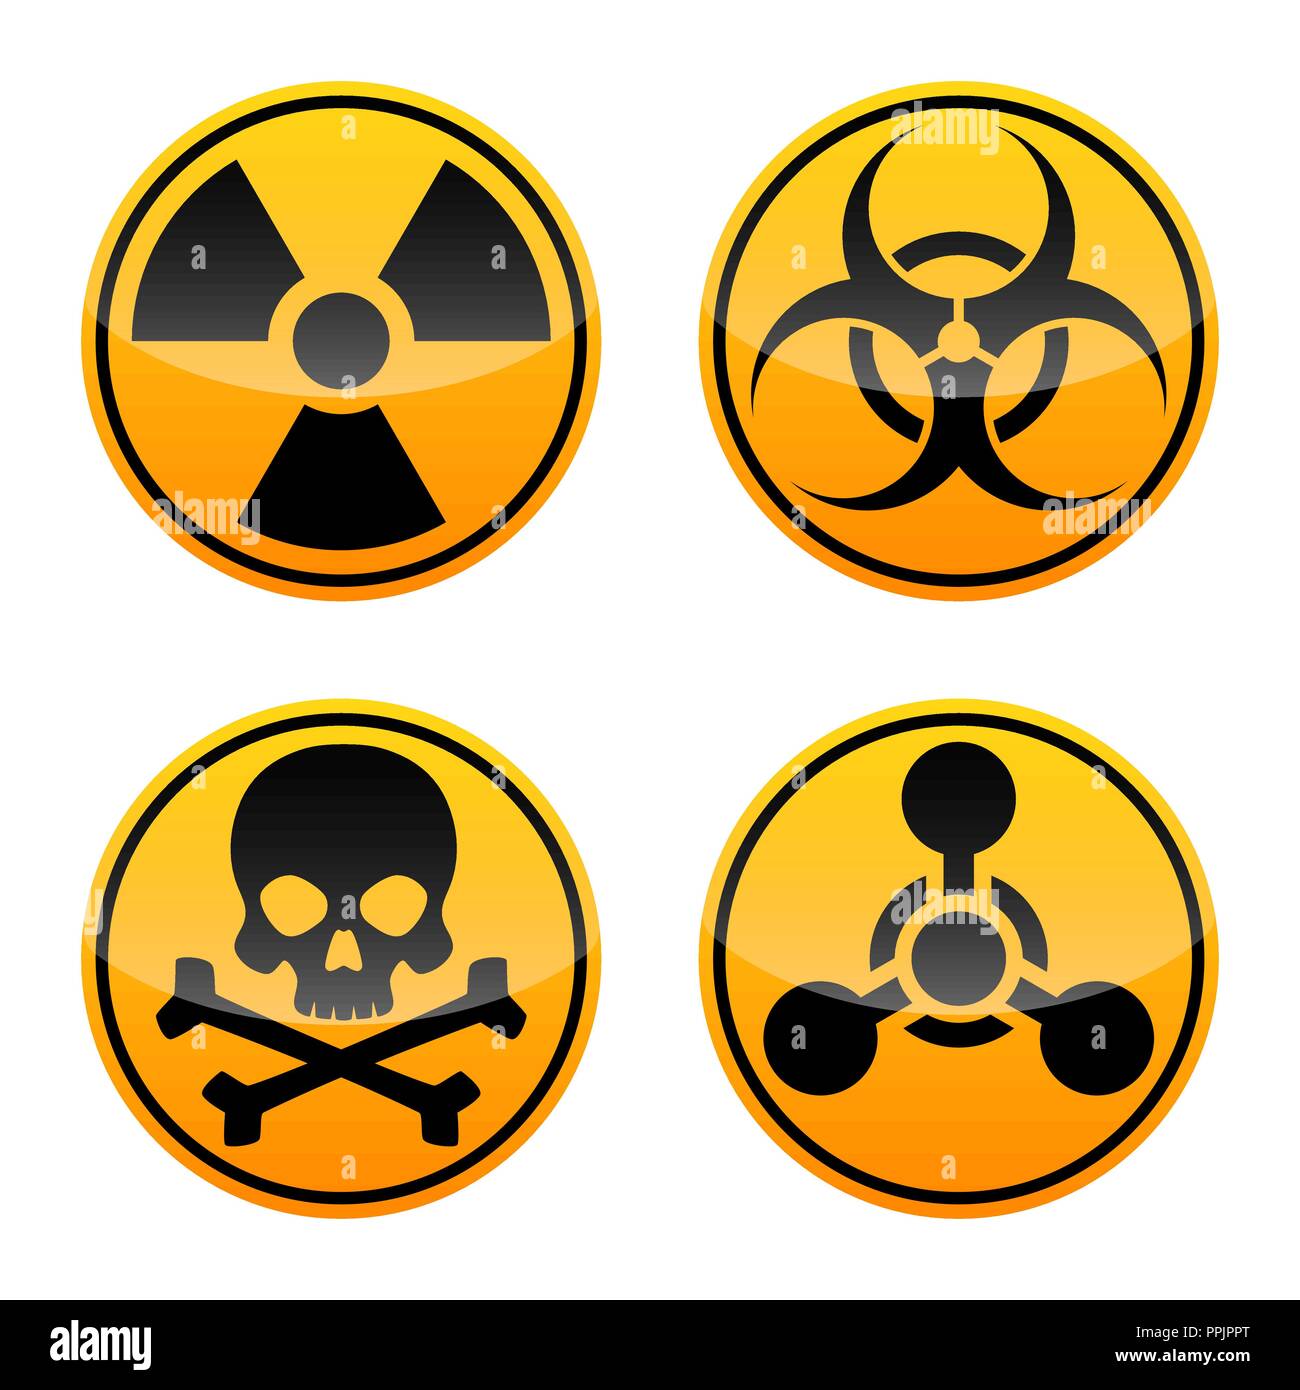 Gefahr vektor Zeichen gesetzt. Strahlung, Biohazard, toxische und Chemische Waffen unterzeichnet. Warnzeichen Stock Vektor